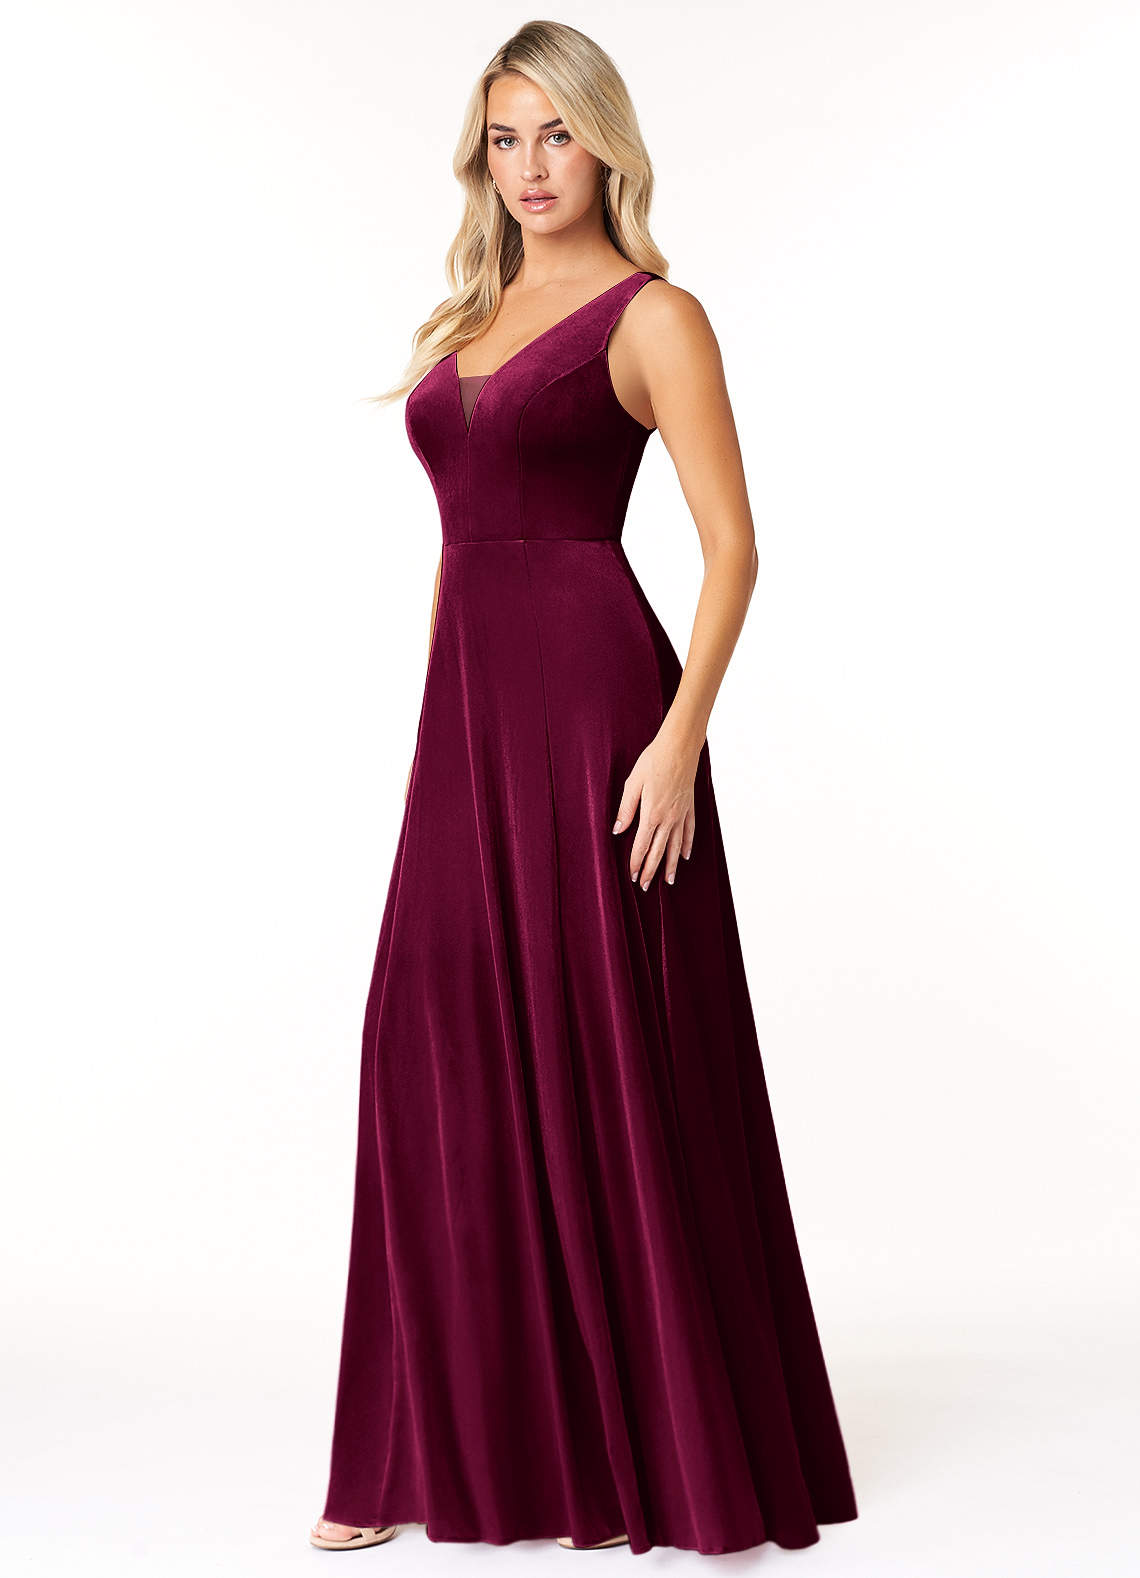 Azazie Sommer Bridesmaid Dresses A-Line Velvet Floor-Length Dress image1